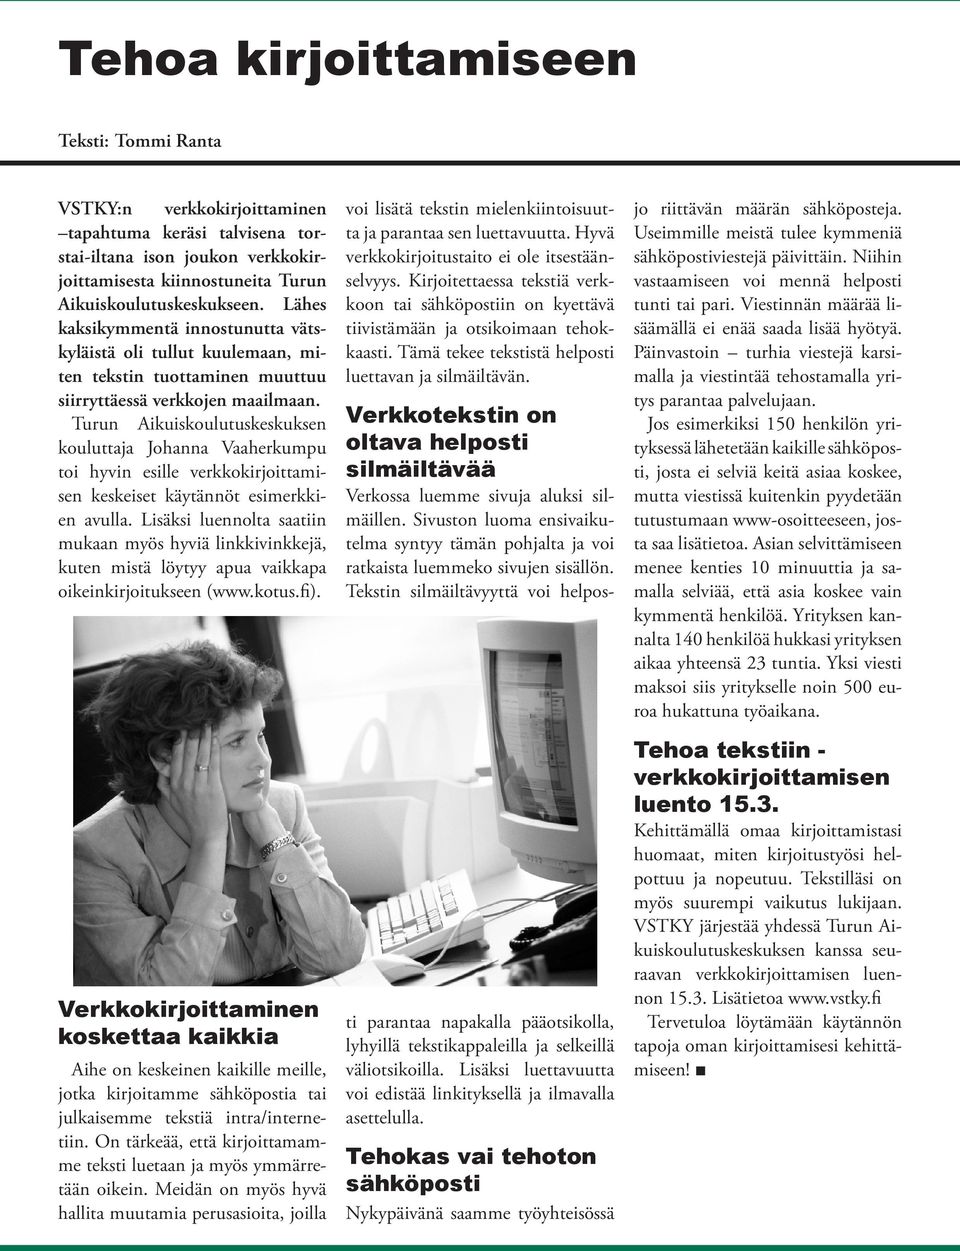 Turun Aikuiskoulutuskeskuksen kouluttaja Johanna Vaaherkumpu toi hyvin esille verkkokirjoittamisen keskeiset käytännöt esimerkkien avulla.